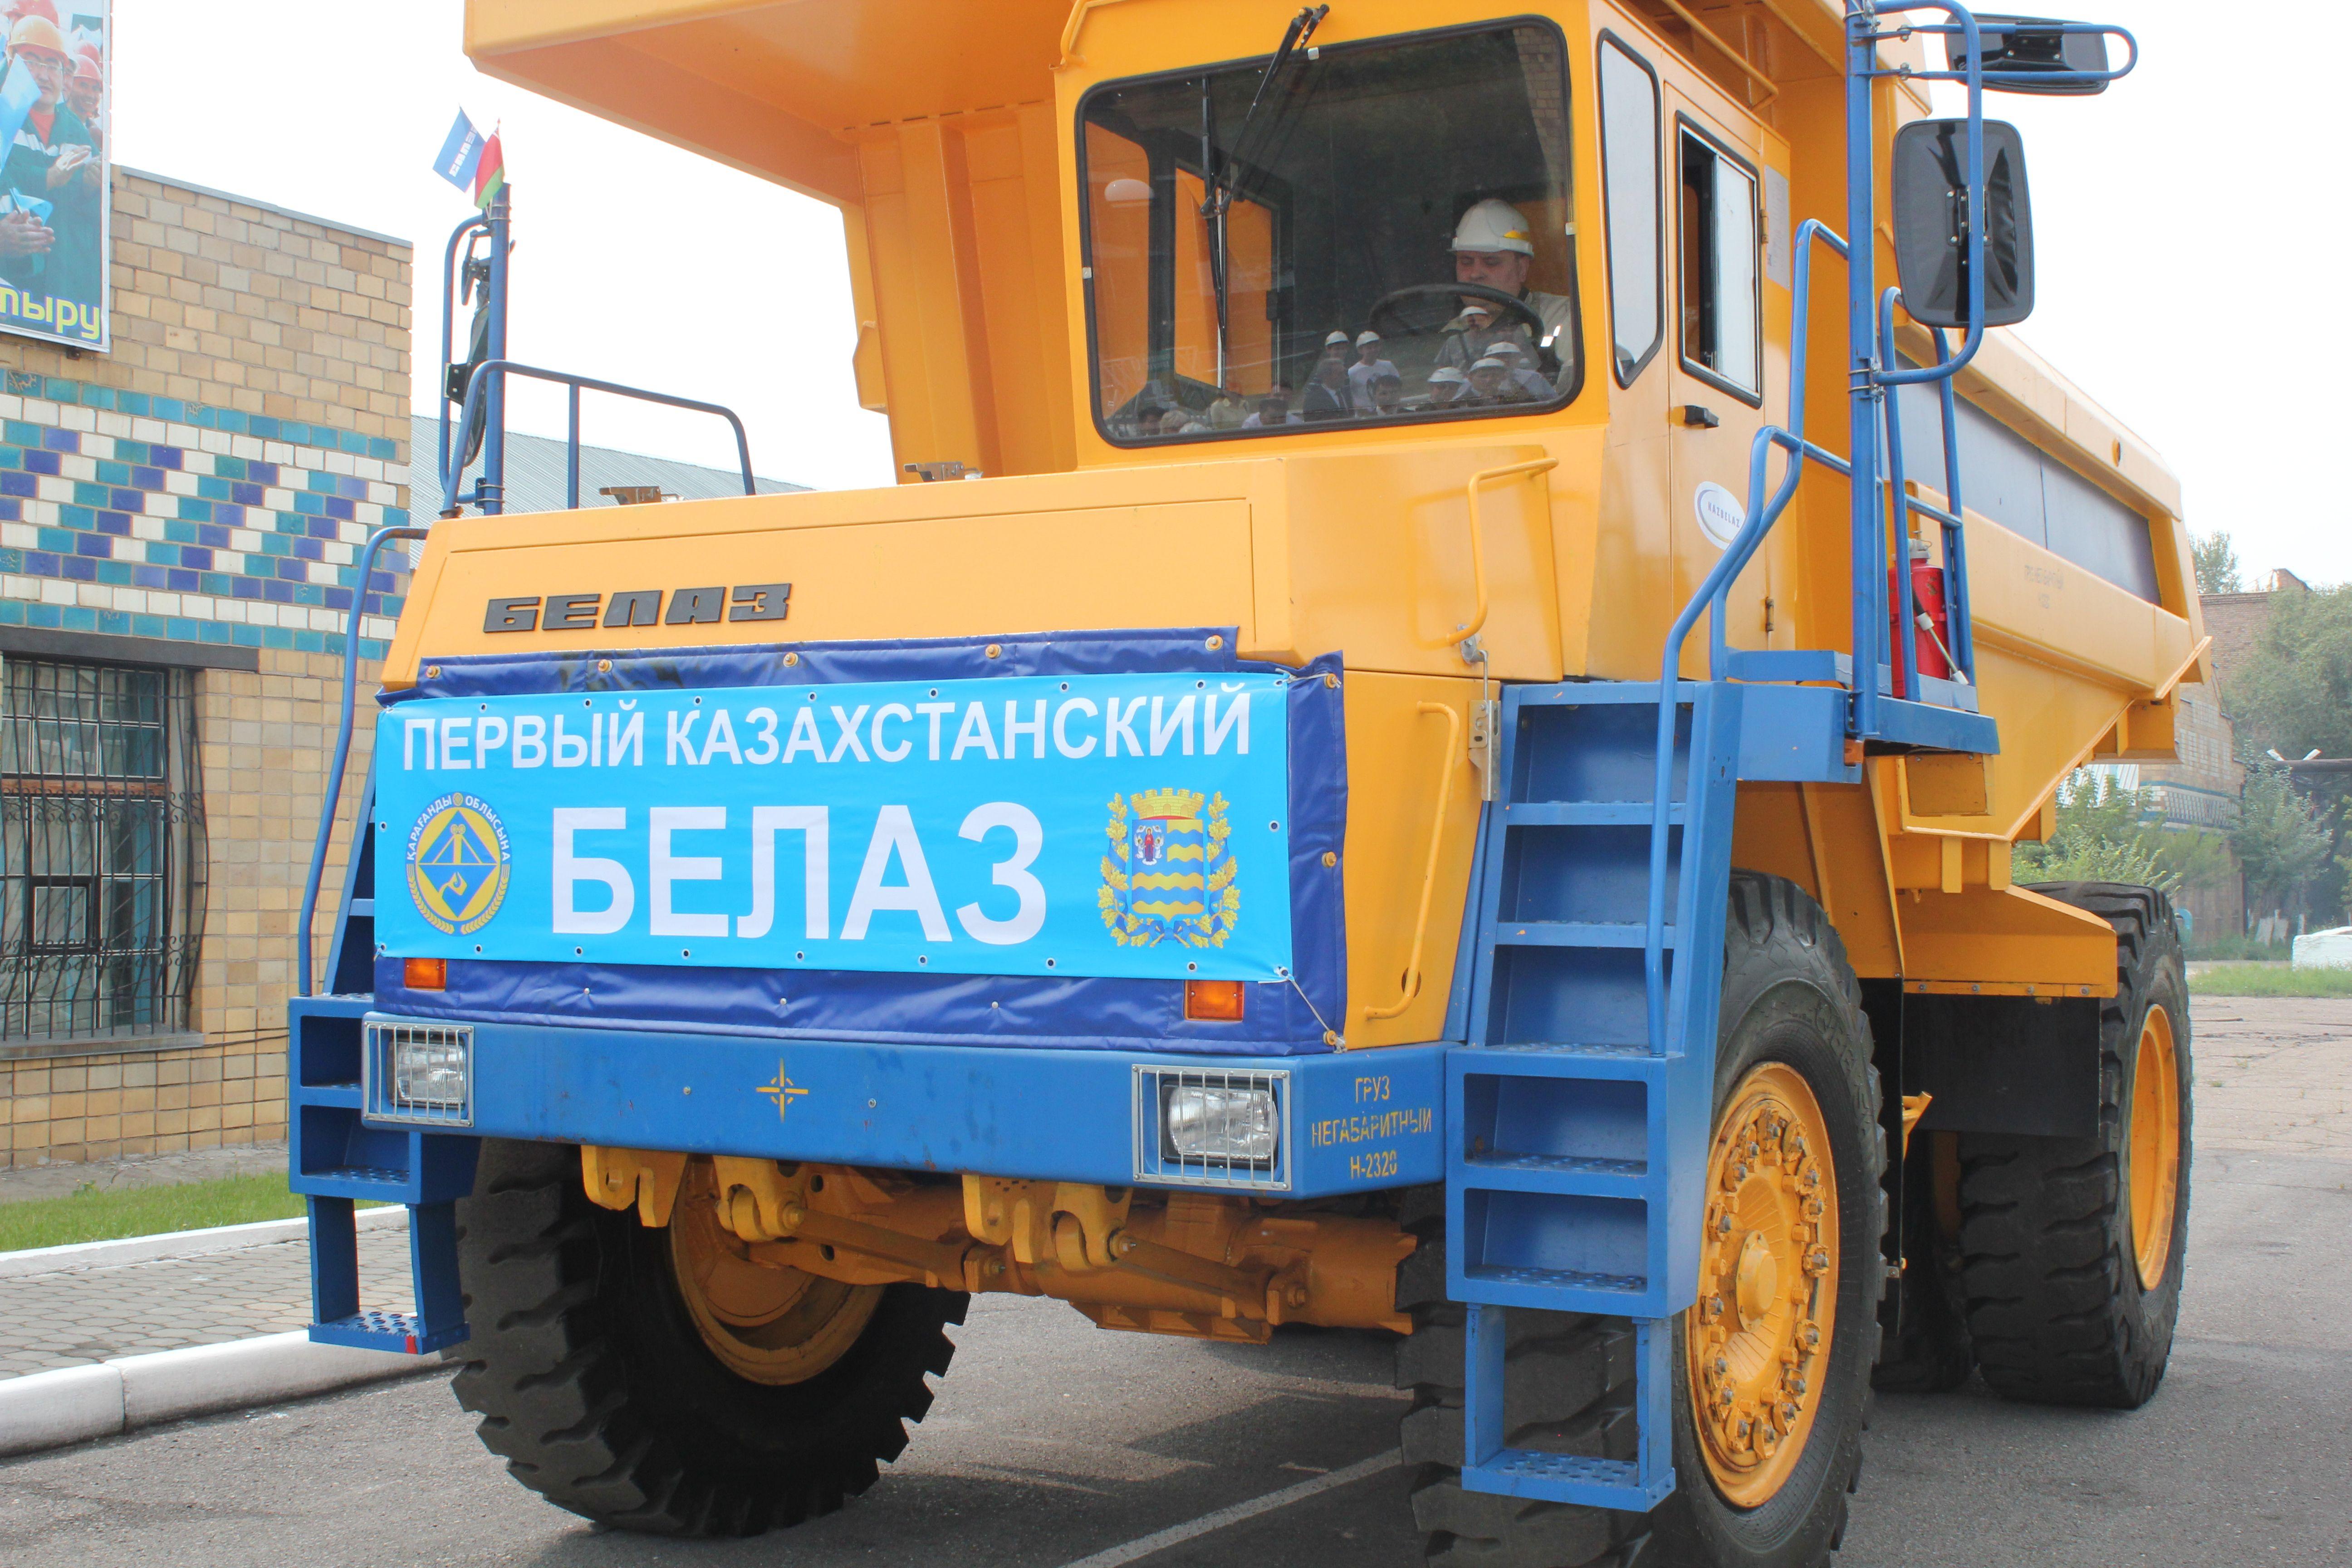 Благодаря ЕАЭС белорусские товары в Казахстане популярны и раскручены – казахстанский эксперт